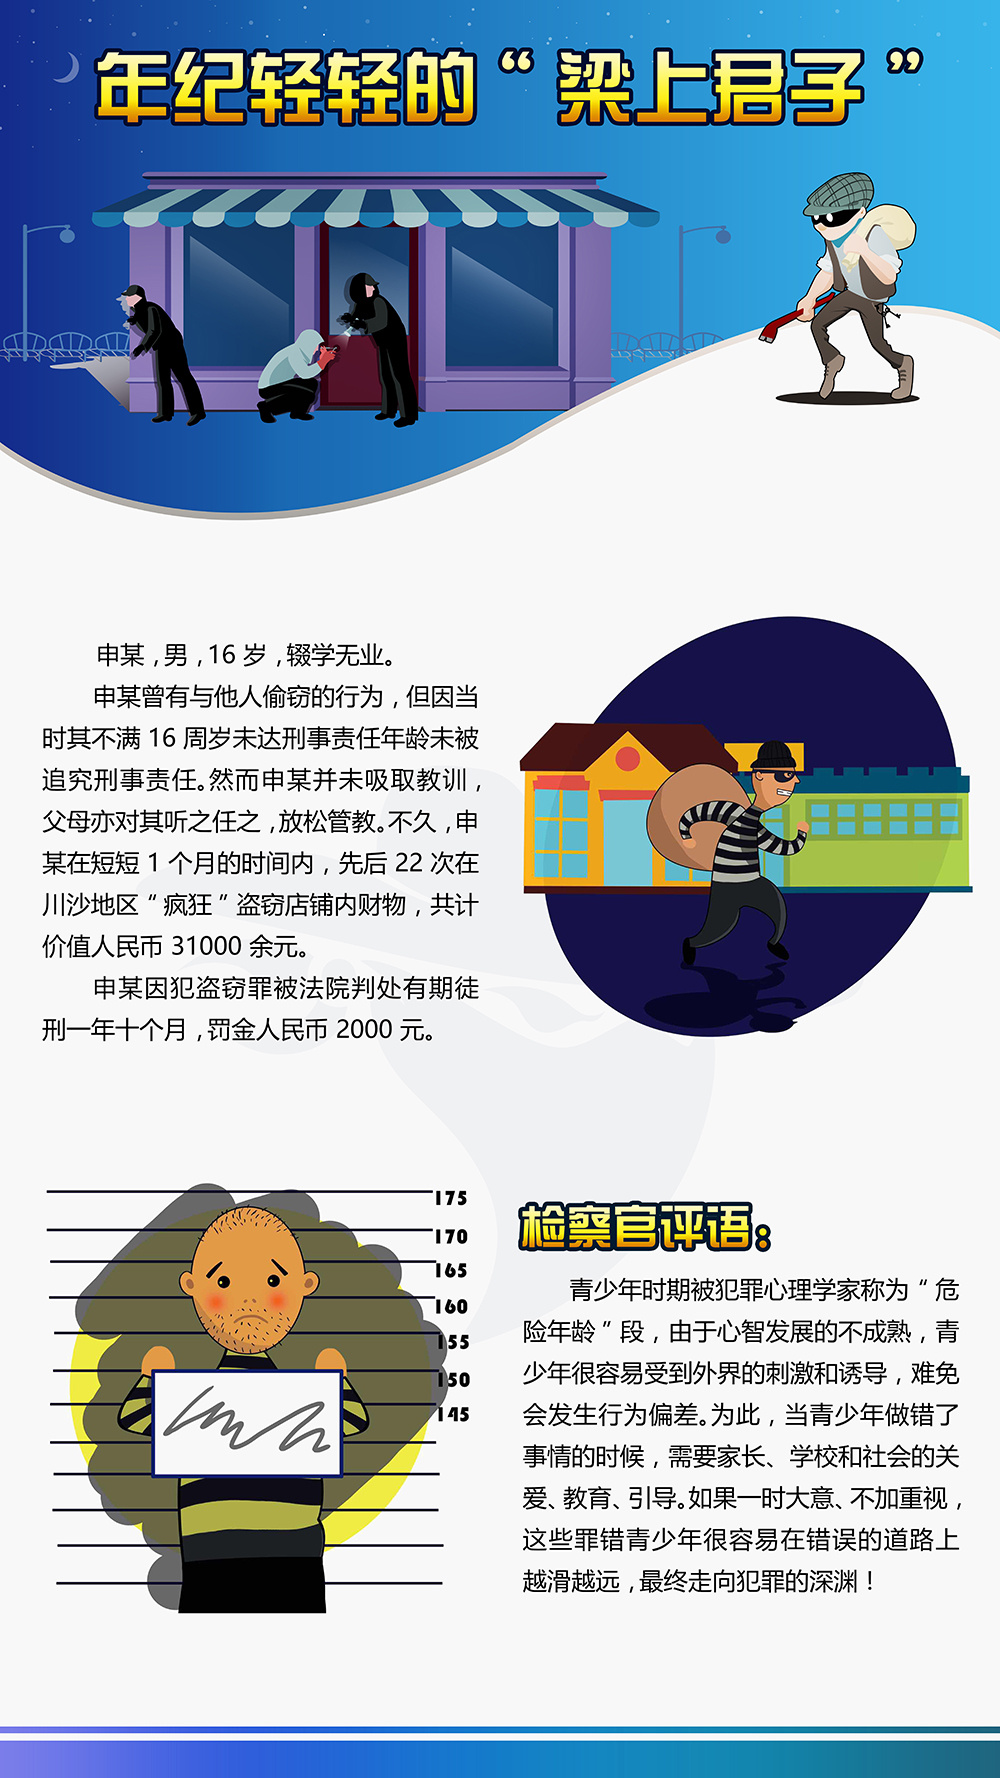 上海迪士尼浦东新区未成年人法制教育基地展板